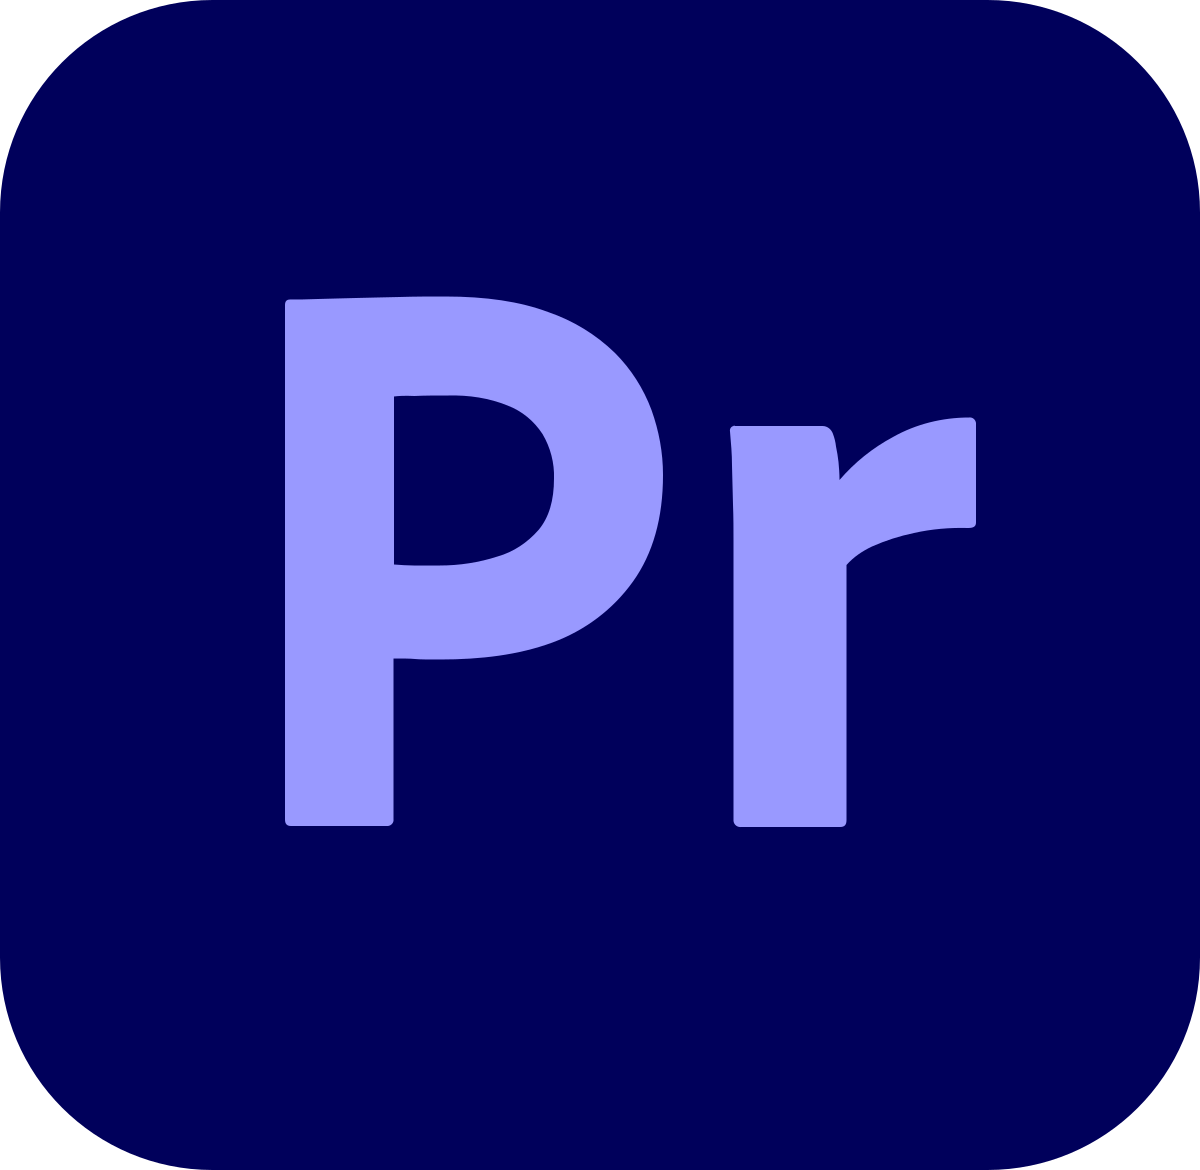 File:Adobe Premiere Pro CC icon.svg - Wikipedia